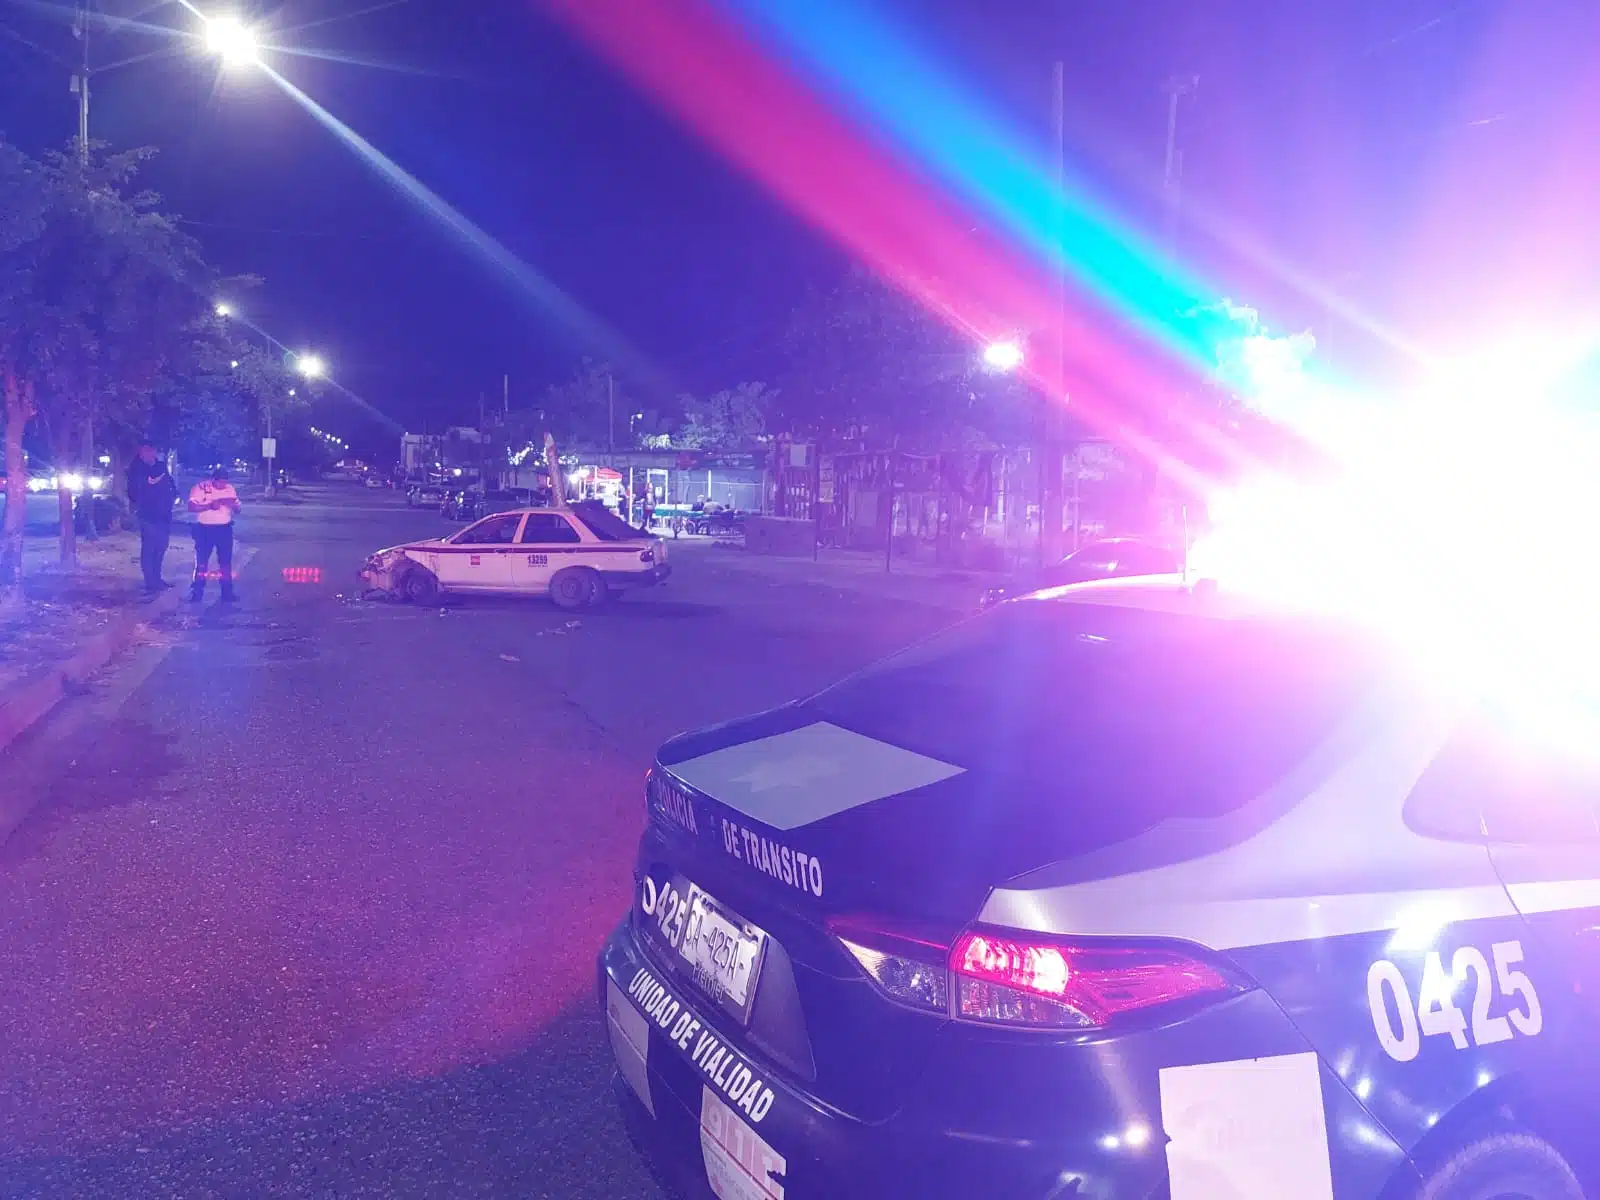 Policíaca Temática Choque Patrulla Vialidad Culiacán Accidente Taxi Auto